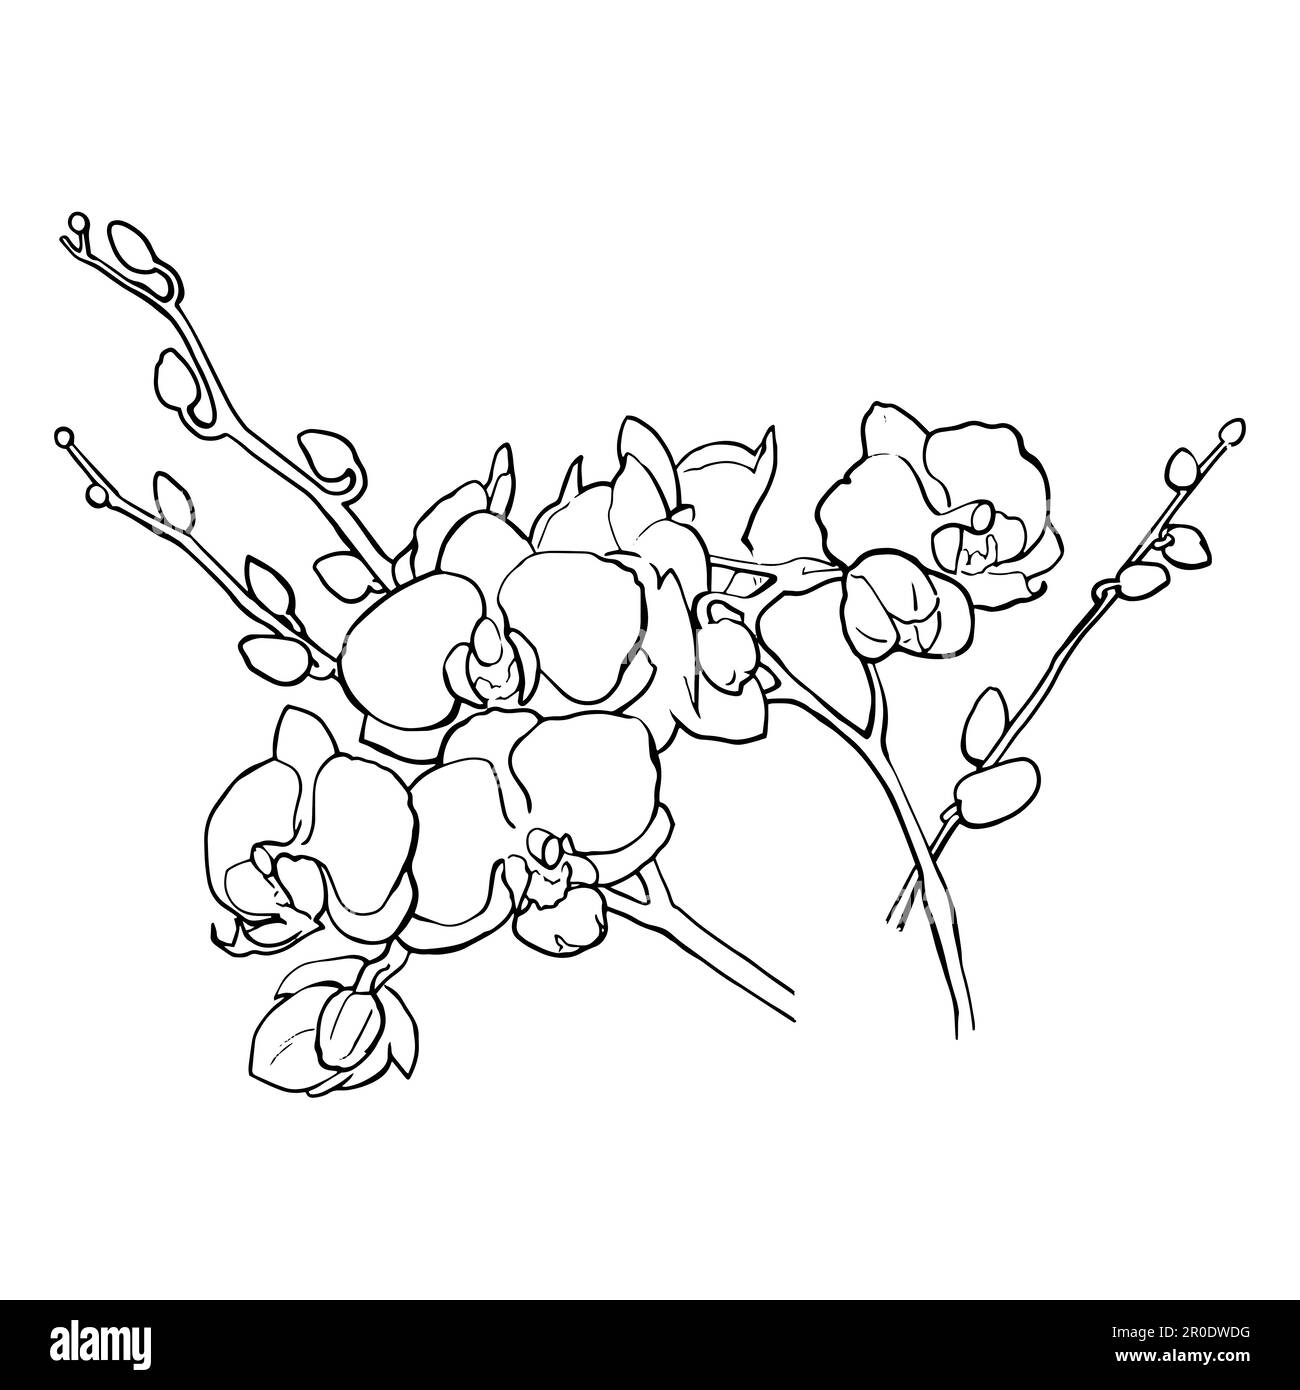 Grafica vettoriale. Disegno lineare a mano libera di fiori di orchidea. Dalla collezione DI GIOIELLI PER CAPELLI. Per la progettazione di siti web, biglietti da visita, etichette, inviti, stampa di poster su tessuti e piatti. Illustrazione vettoriale Illustrazione Vettoriale